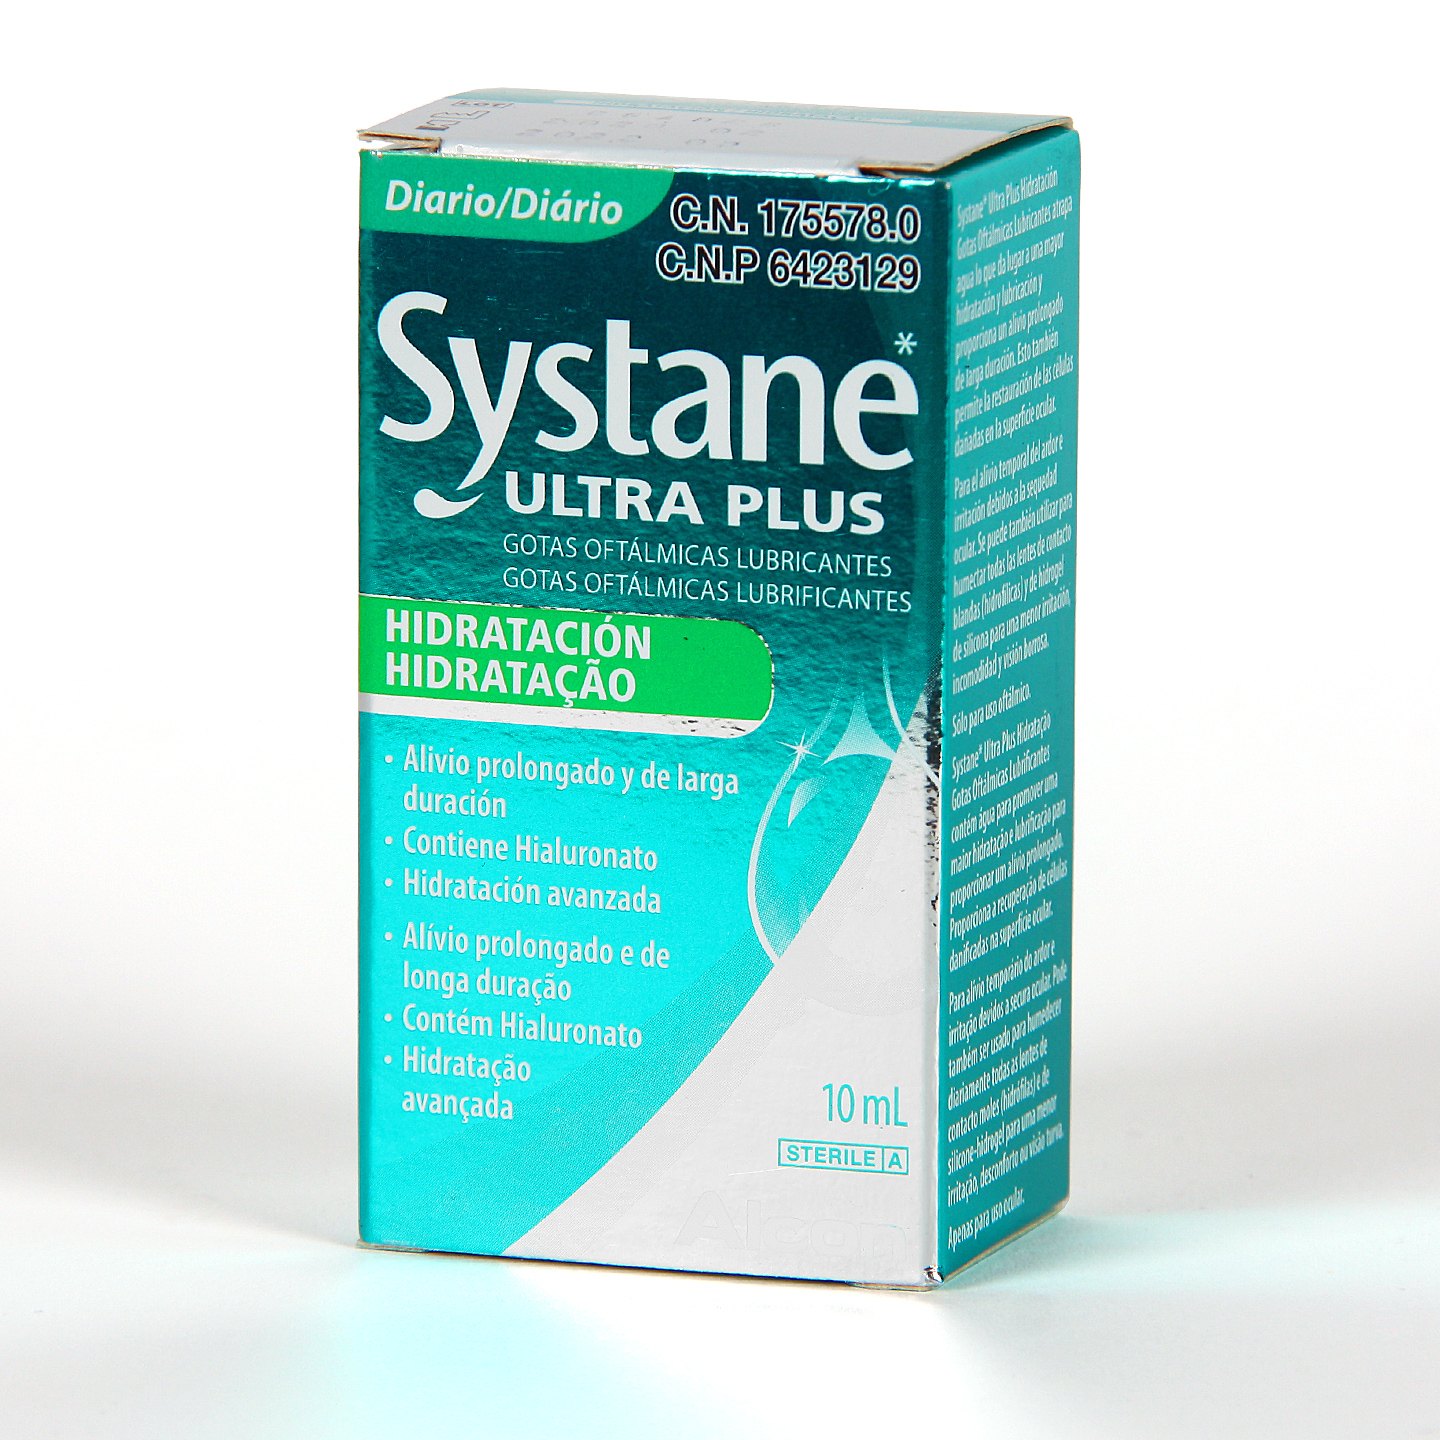 Systane Hidratación gotas oftálmicas lubricantes 10 ml (sin conservantes)